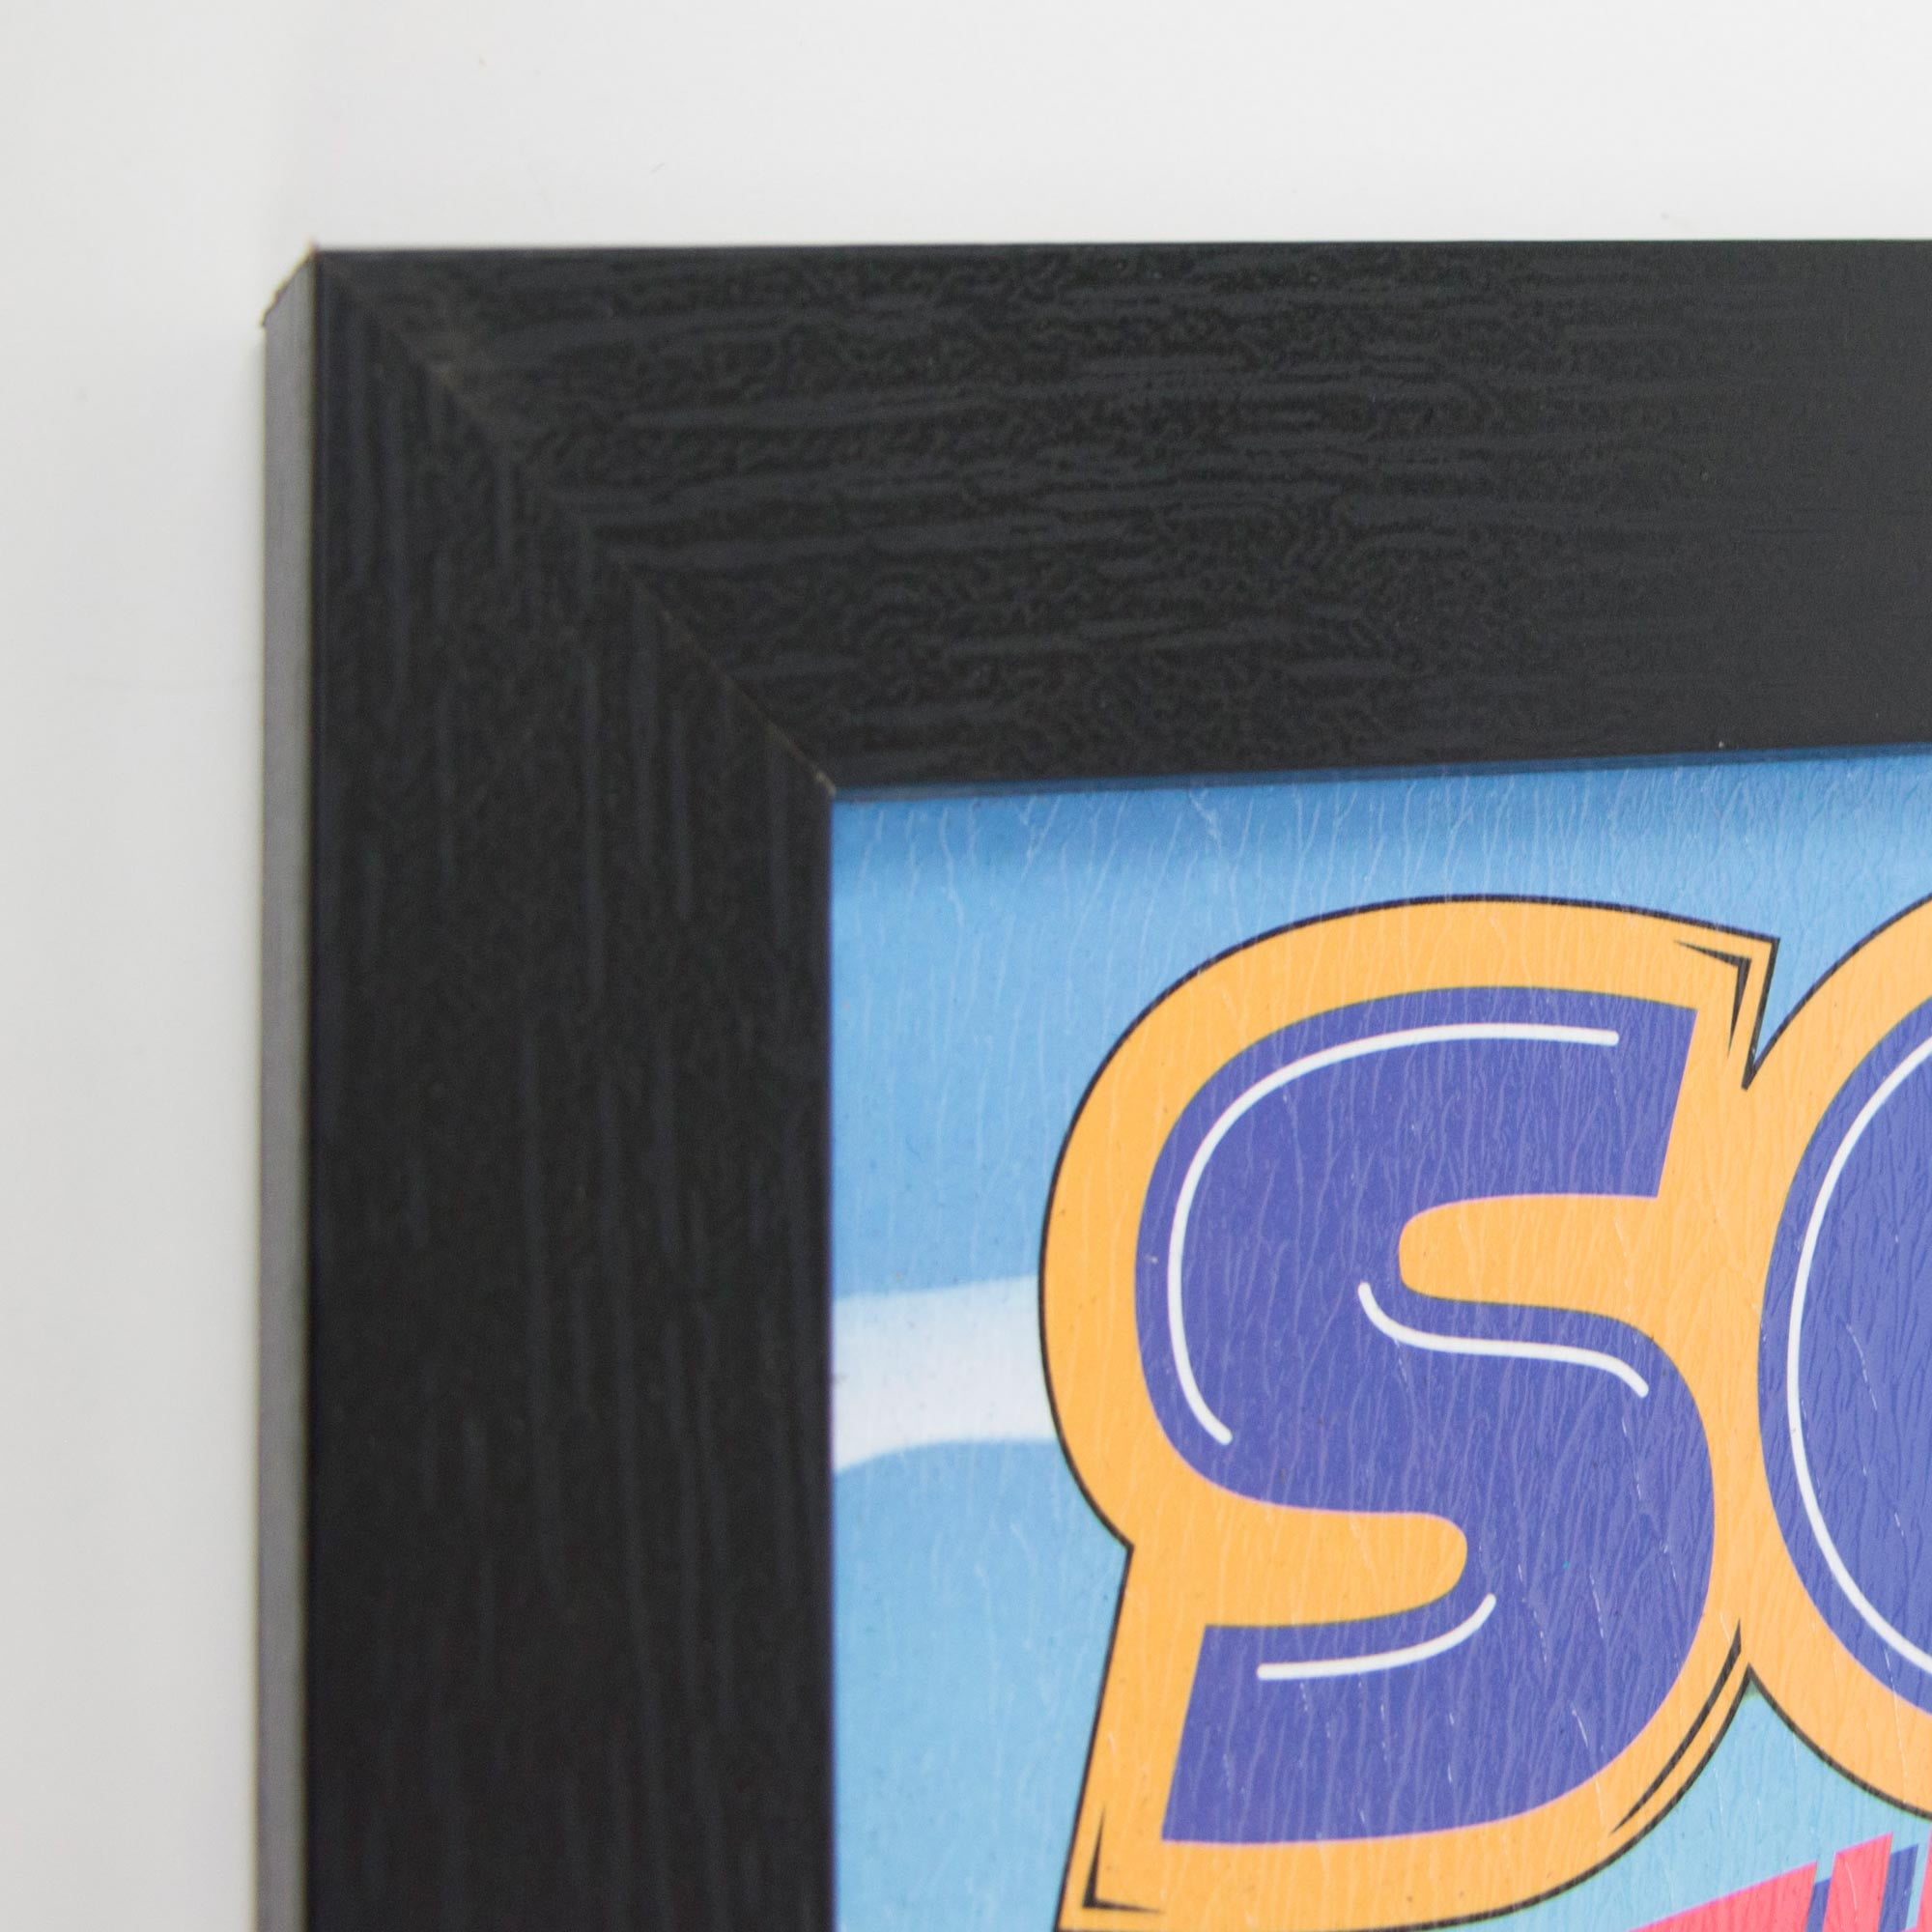 SEGA Master System Sonic the Hedgehog Box Art 10 x 7 Retro Look Meta –  Rusty Walls Sign Shop